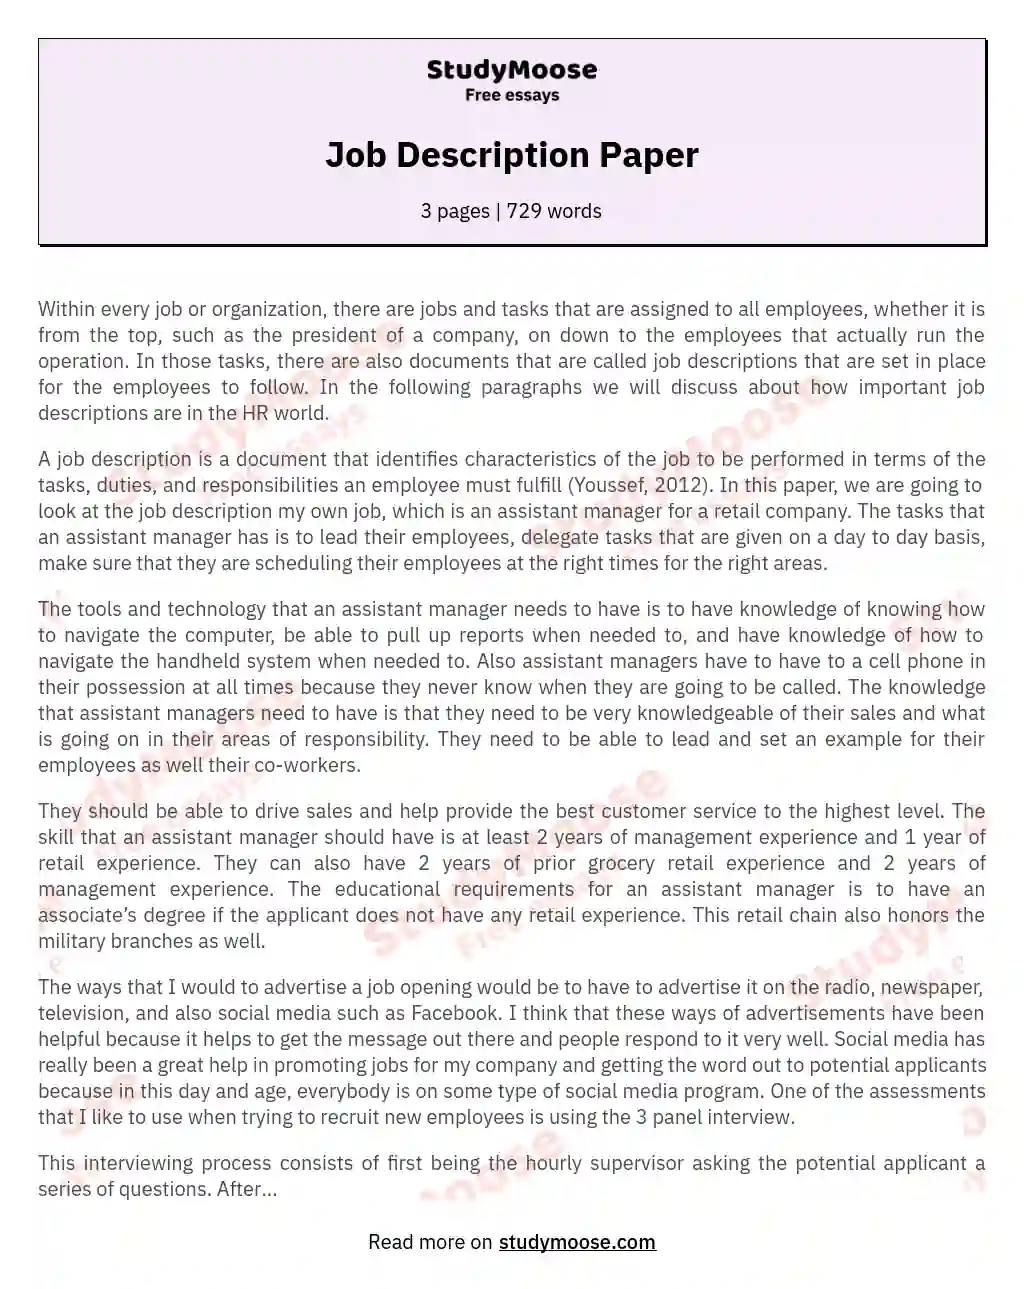 Job Description Paper essay